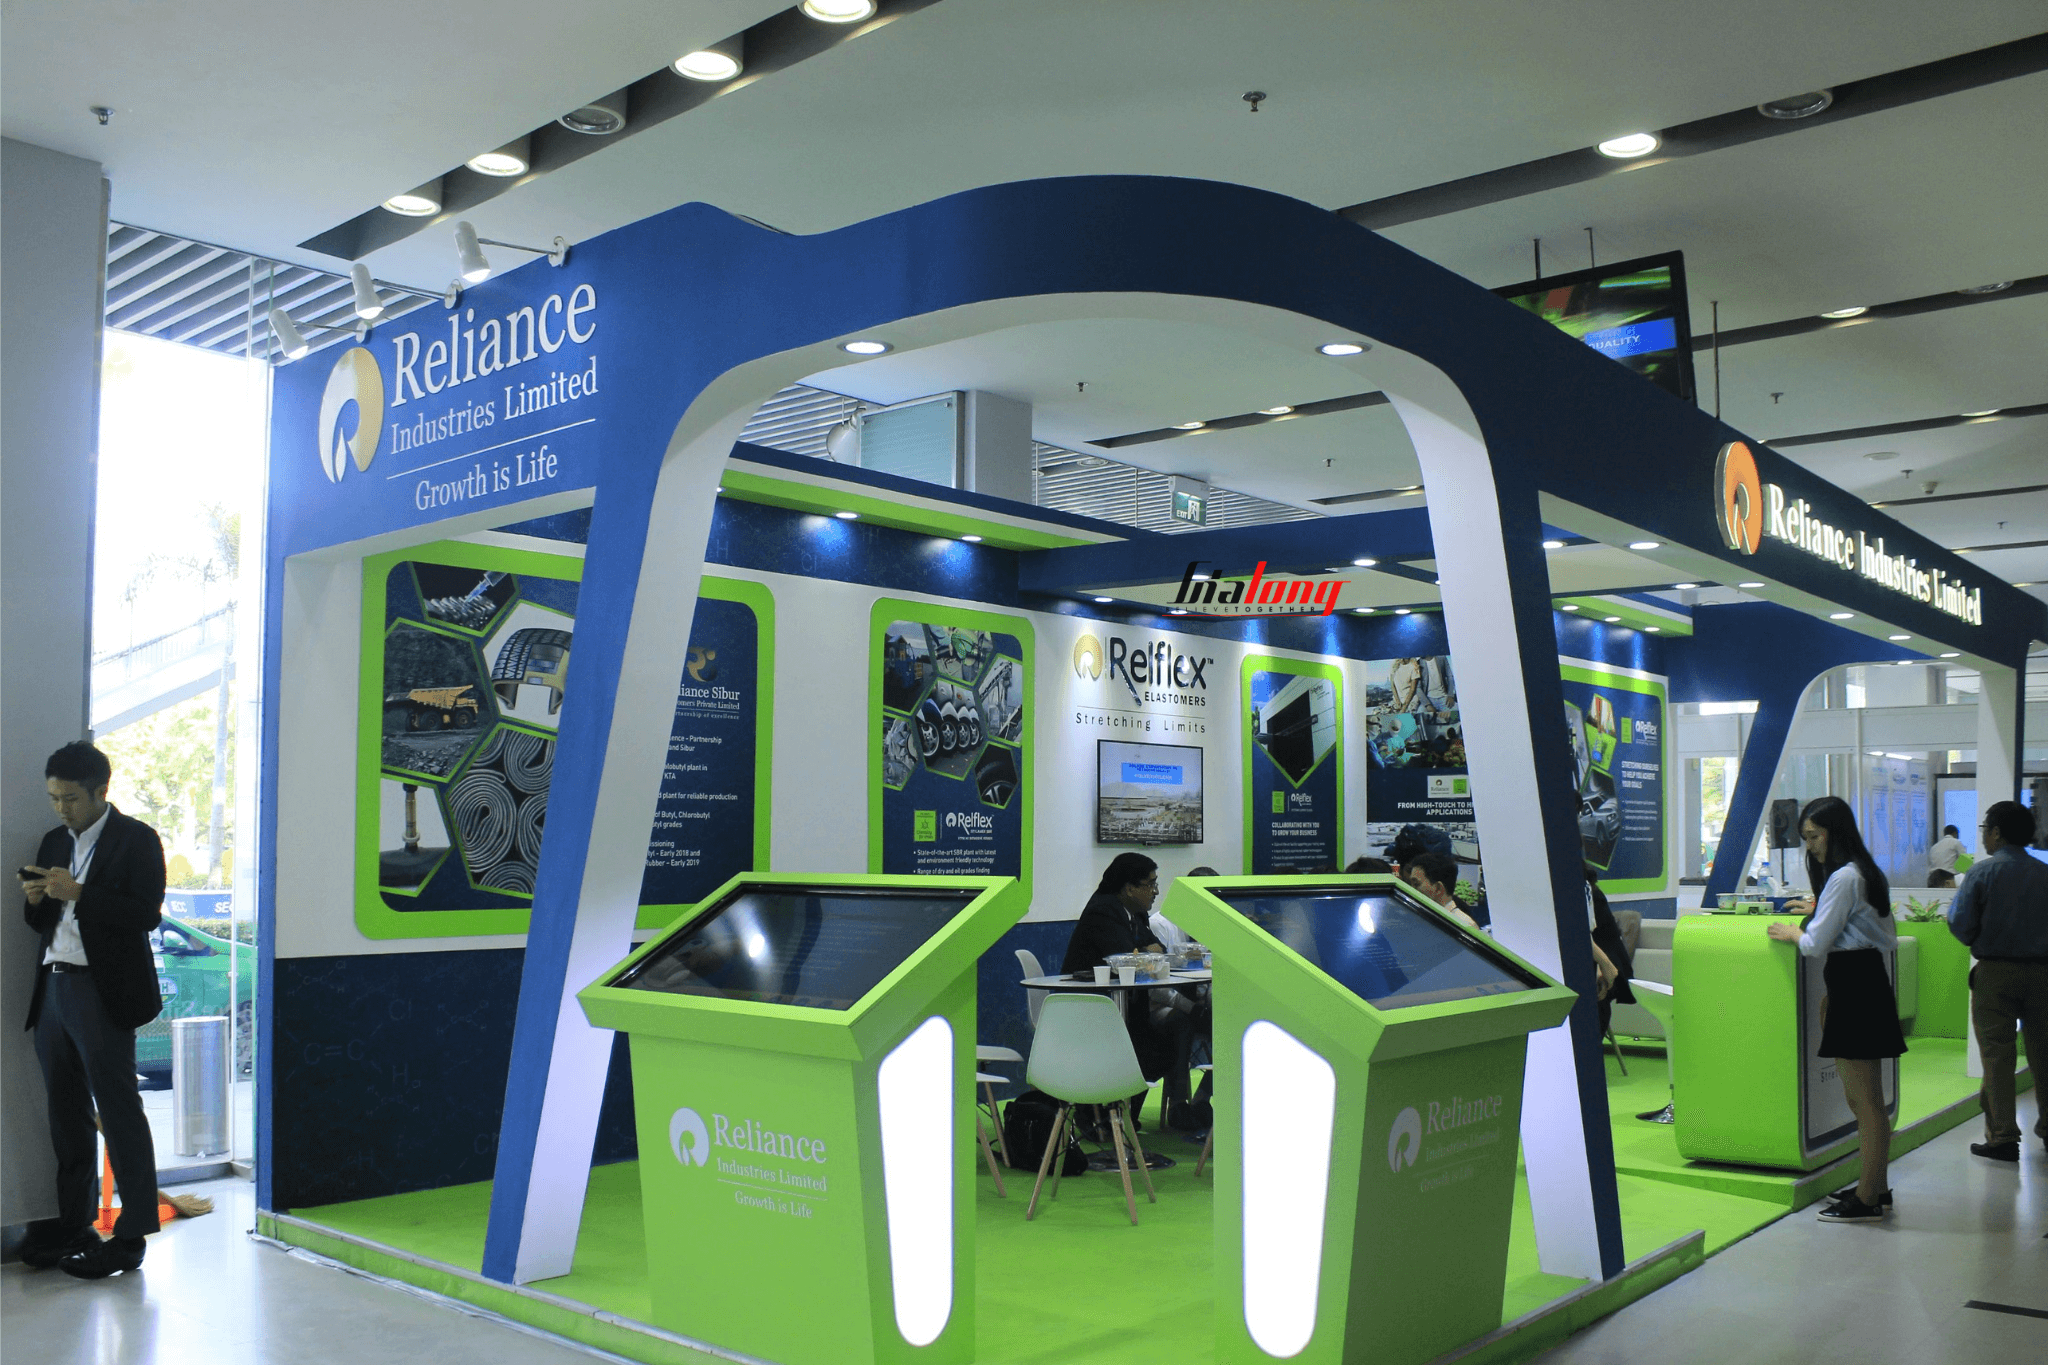 Thiết kế gian hàng triển lãm - Exhibition booth design